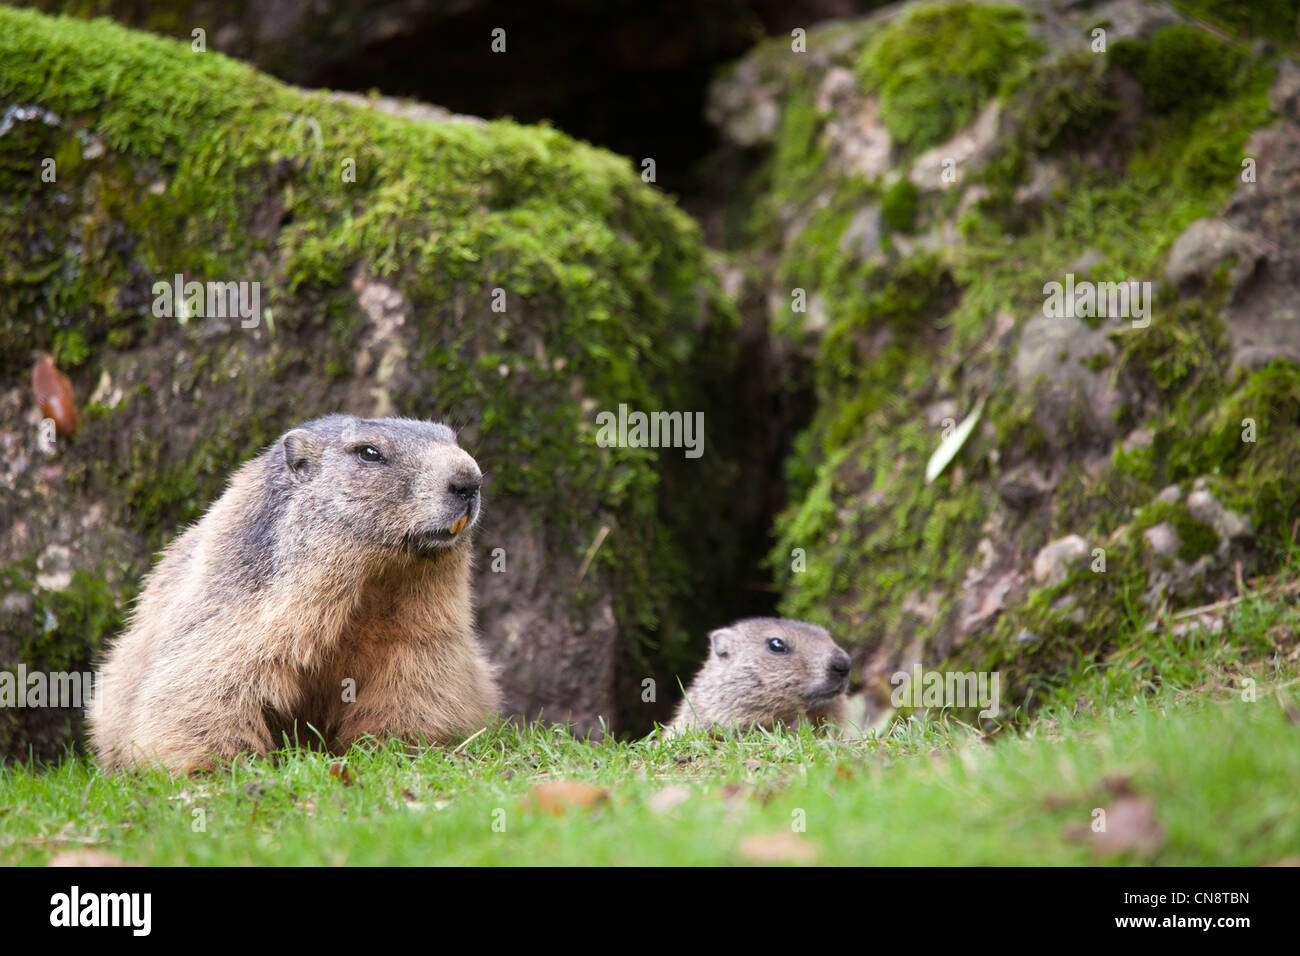 Marmot (Marmota marmota) Stock Photo